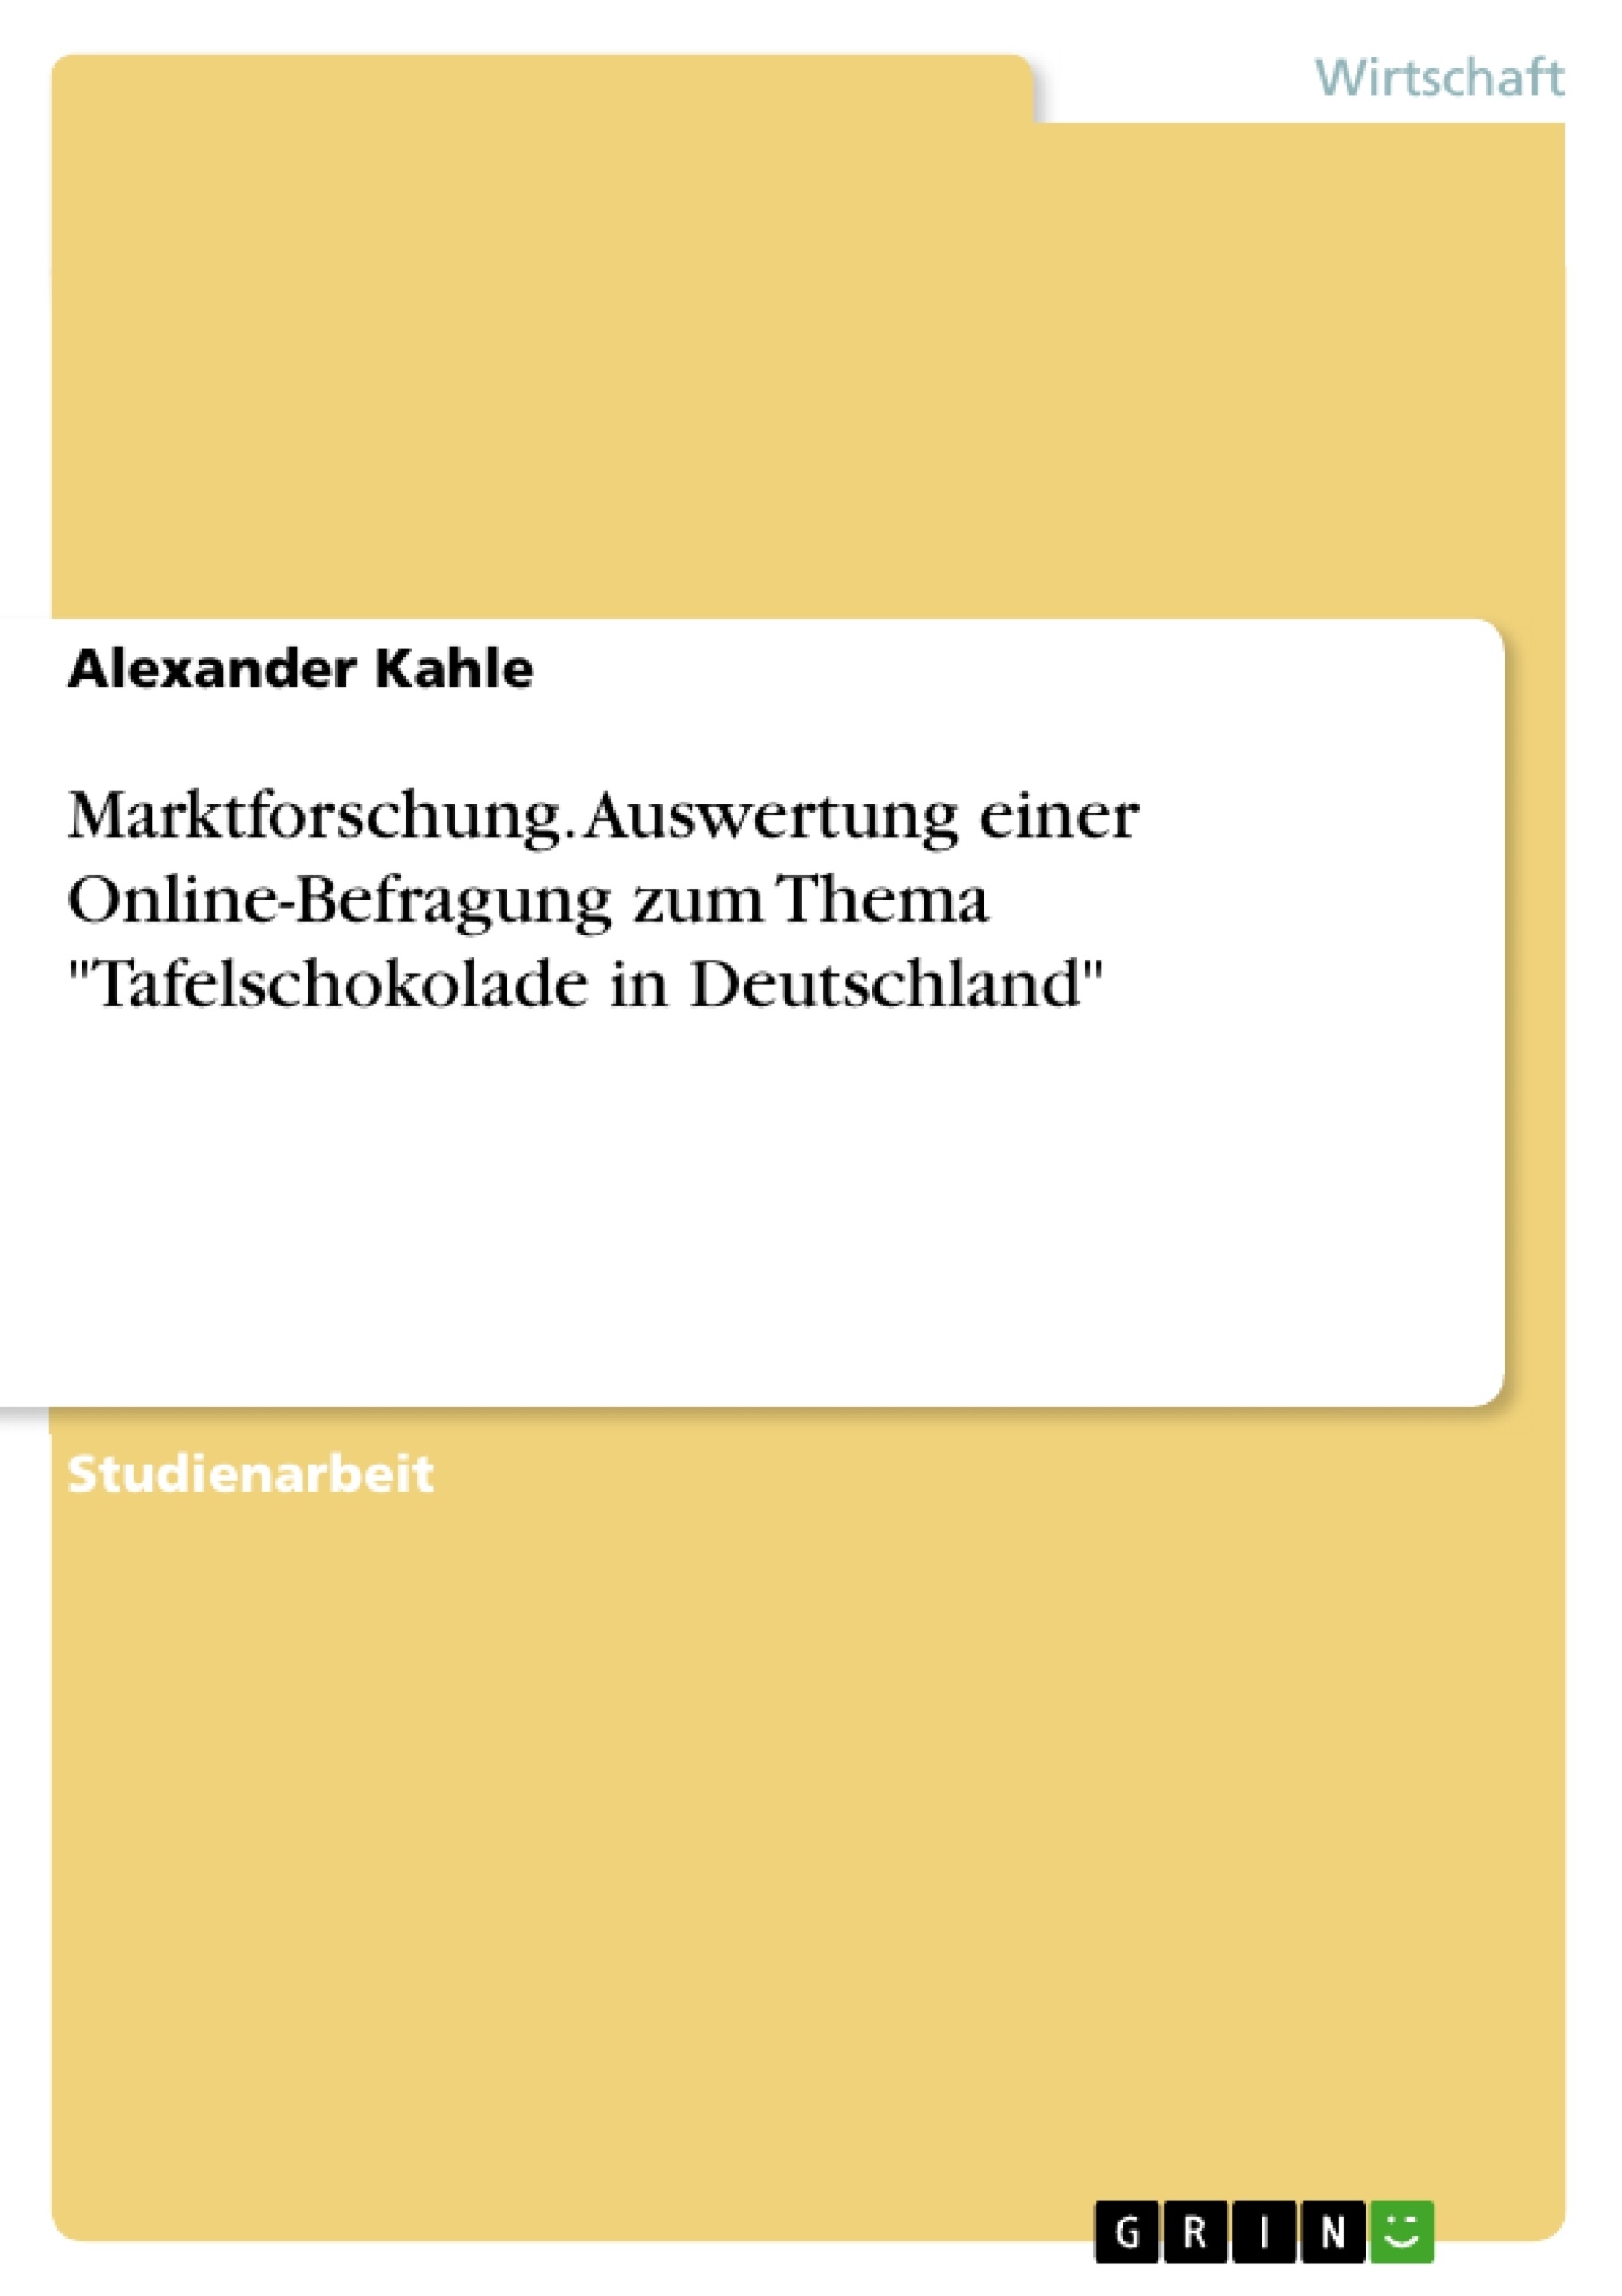 Titel: Marktforschung. Auswertung einer Online-Befragung zum Thema "Tafelschokolade in Deutschland"